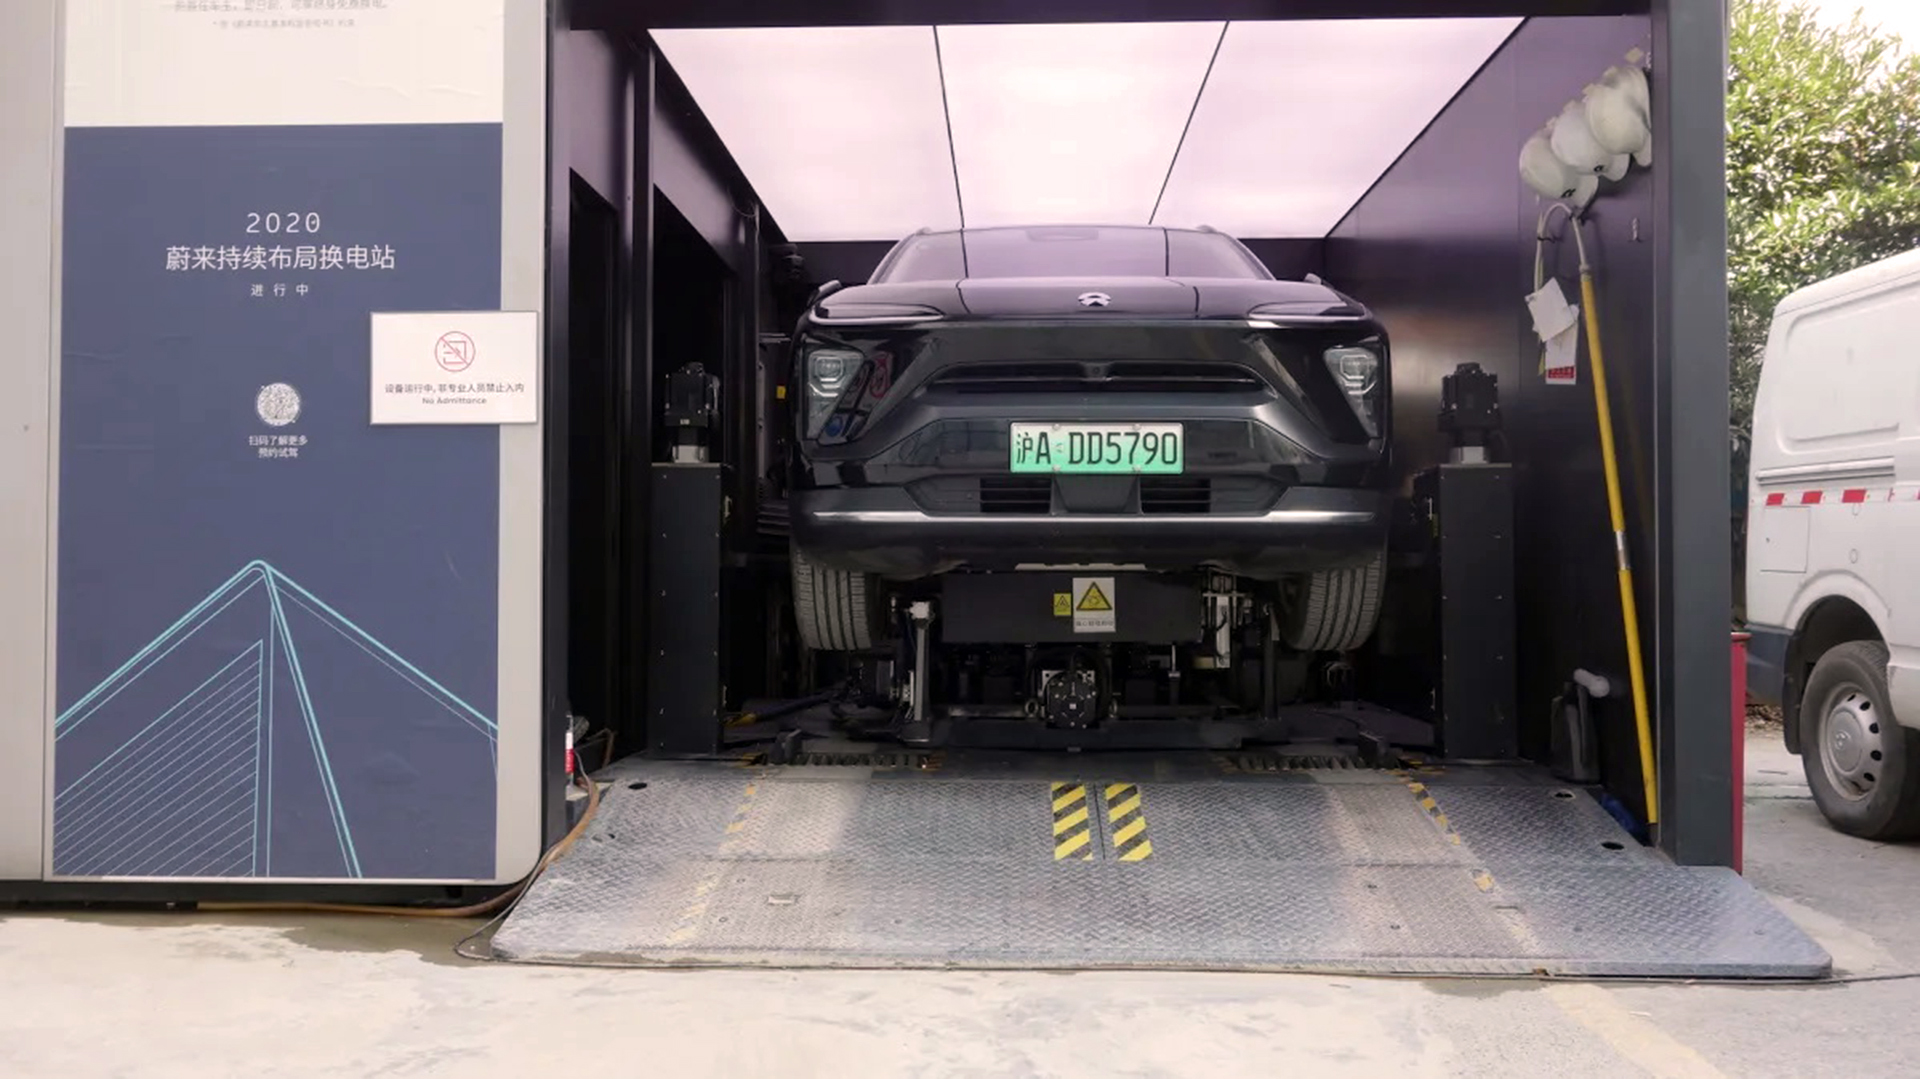 El auto entra a la estación, se eleva y cuatro robots cambian la batería por una completamente cargada en poco más de 5 minutos